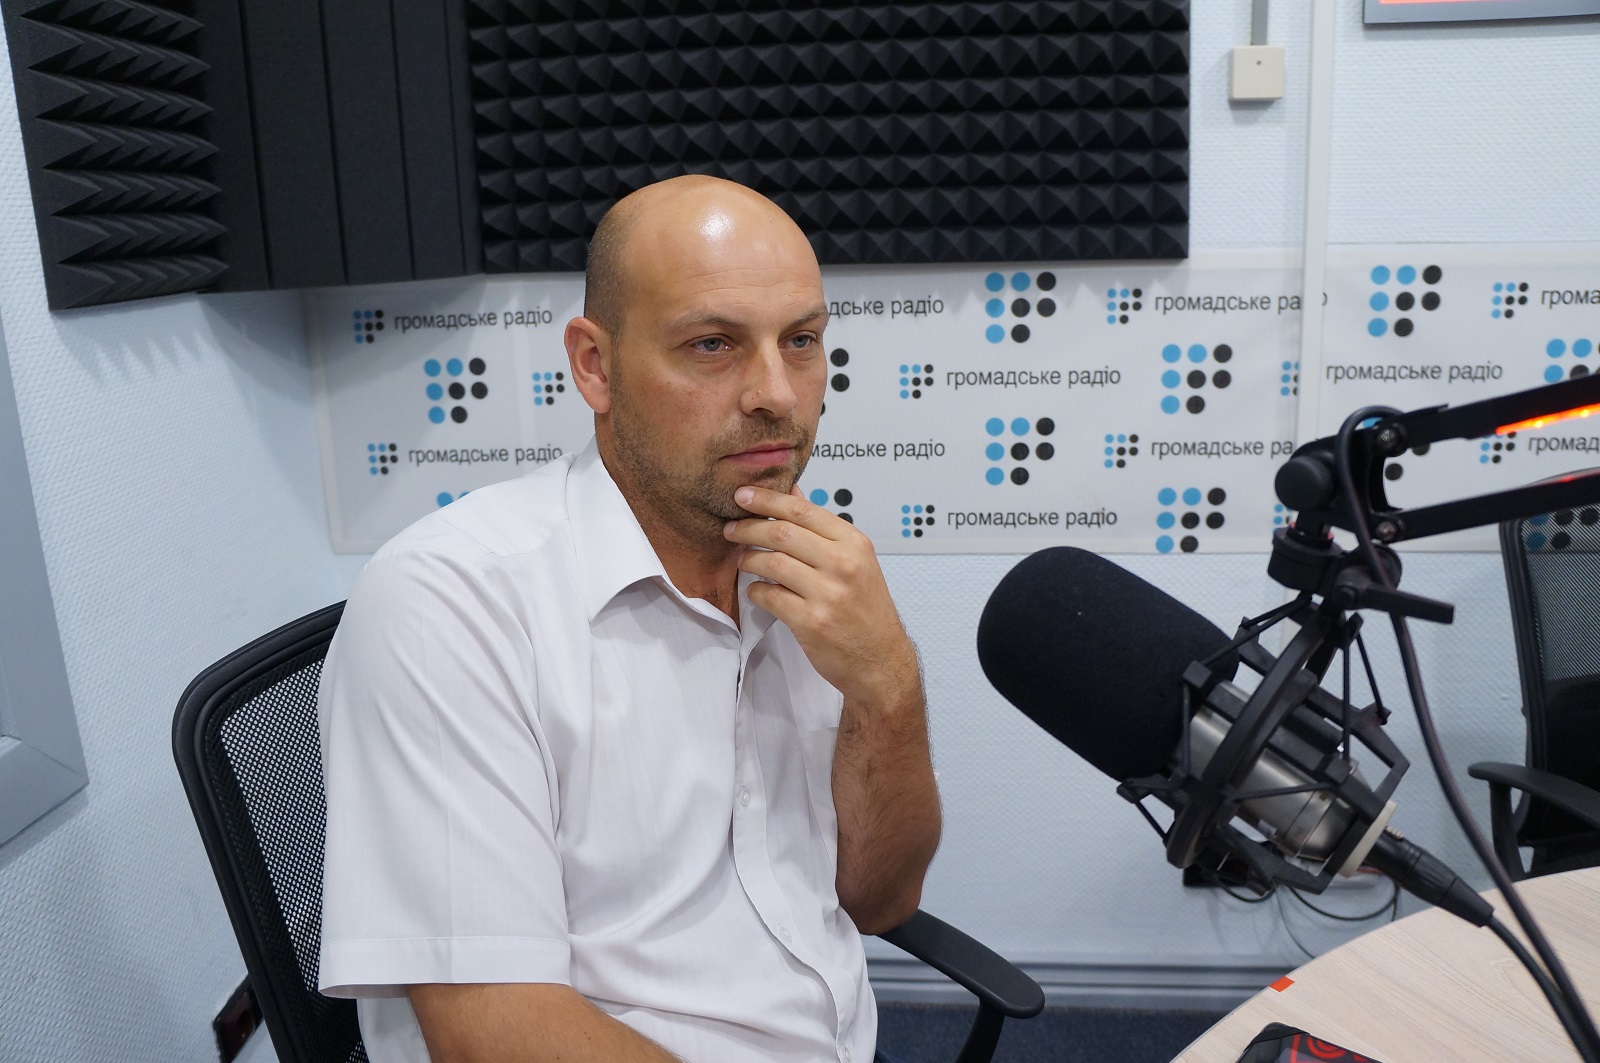 Чи потрібен діалог з окупованим Донбасом — відповідають журналісти